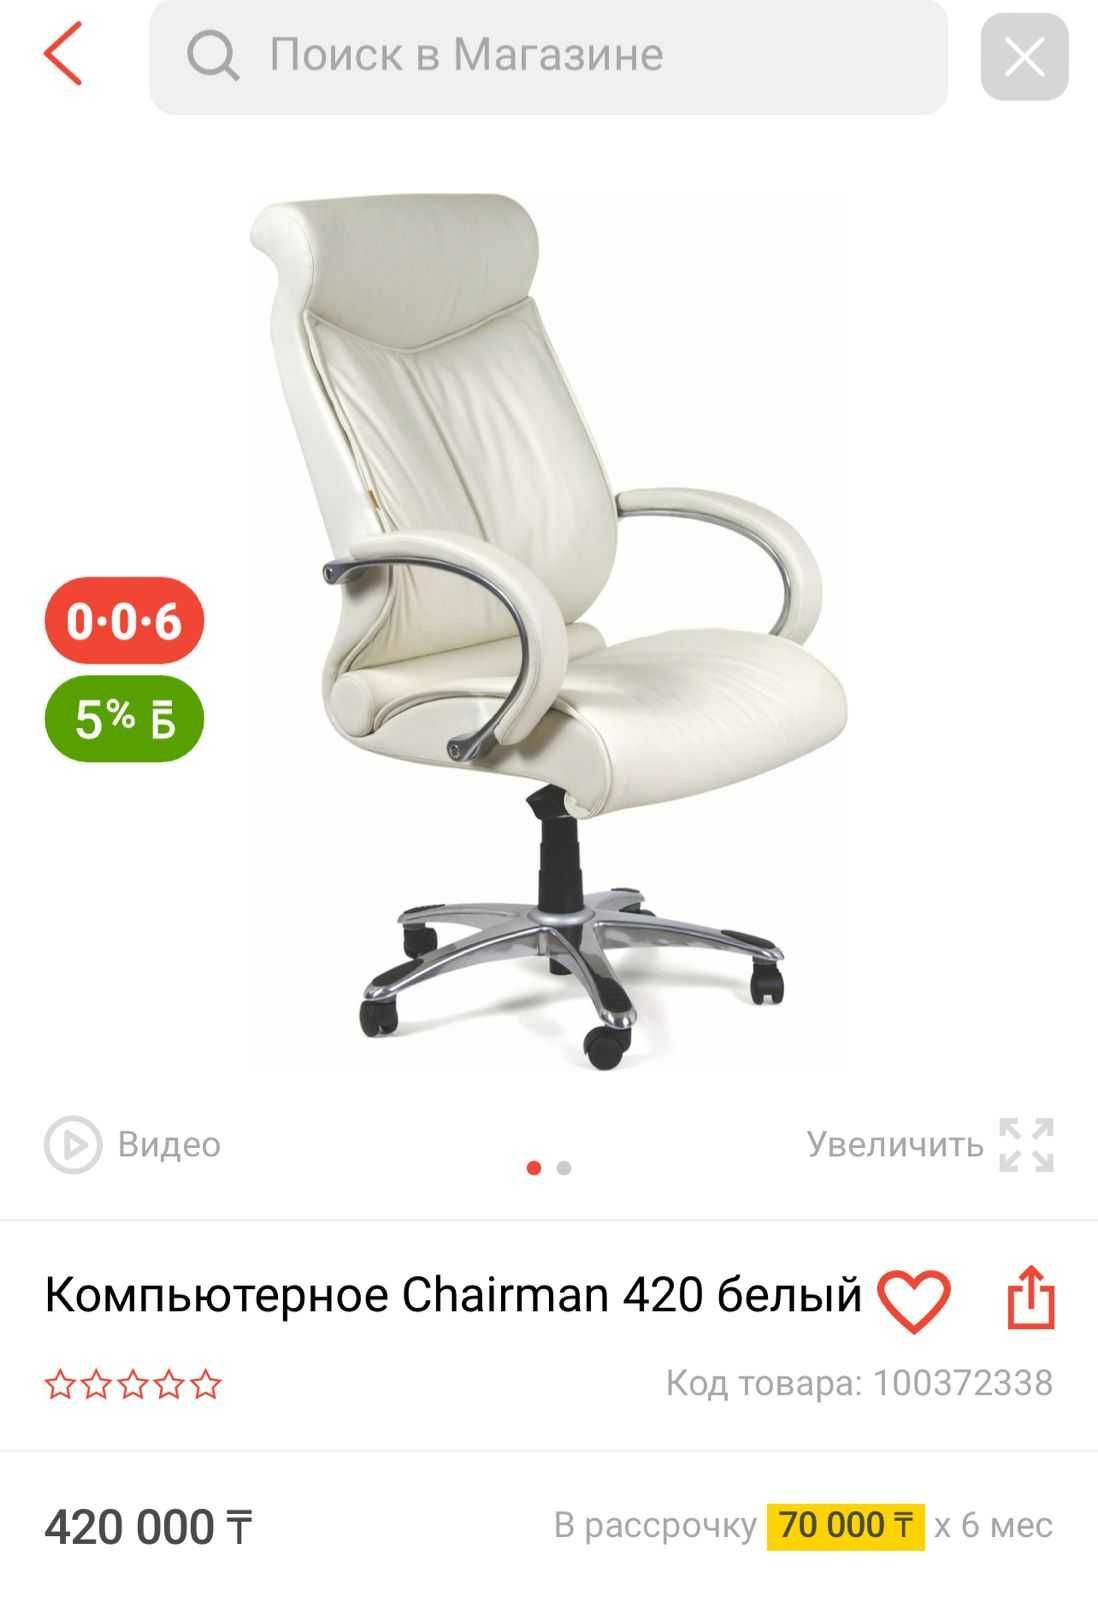 Компьютерное кресло Chairman 420 белый